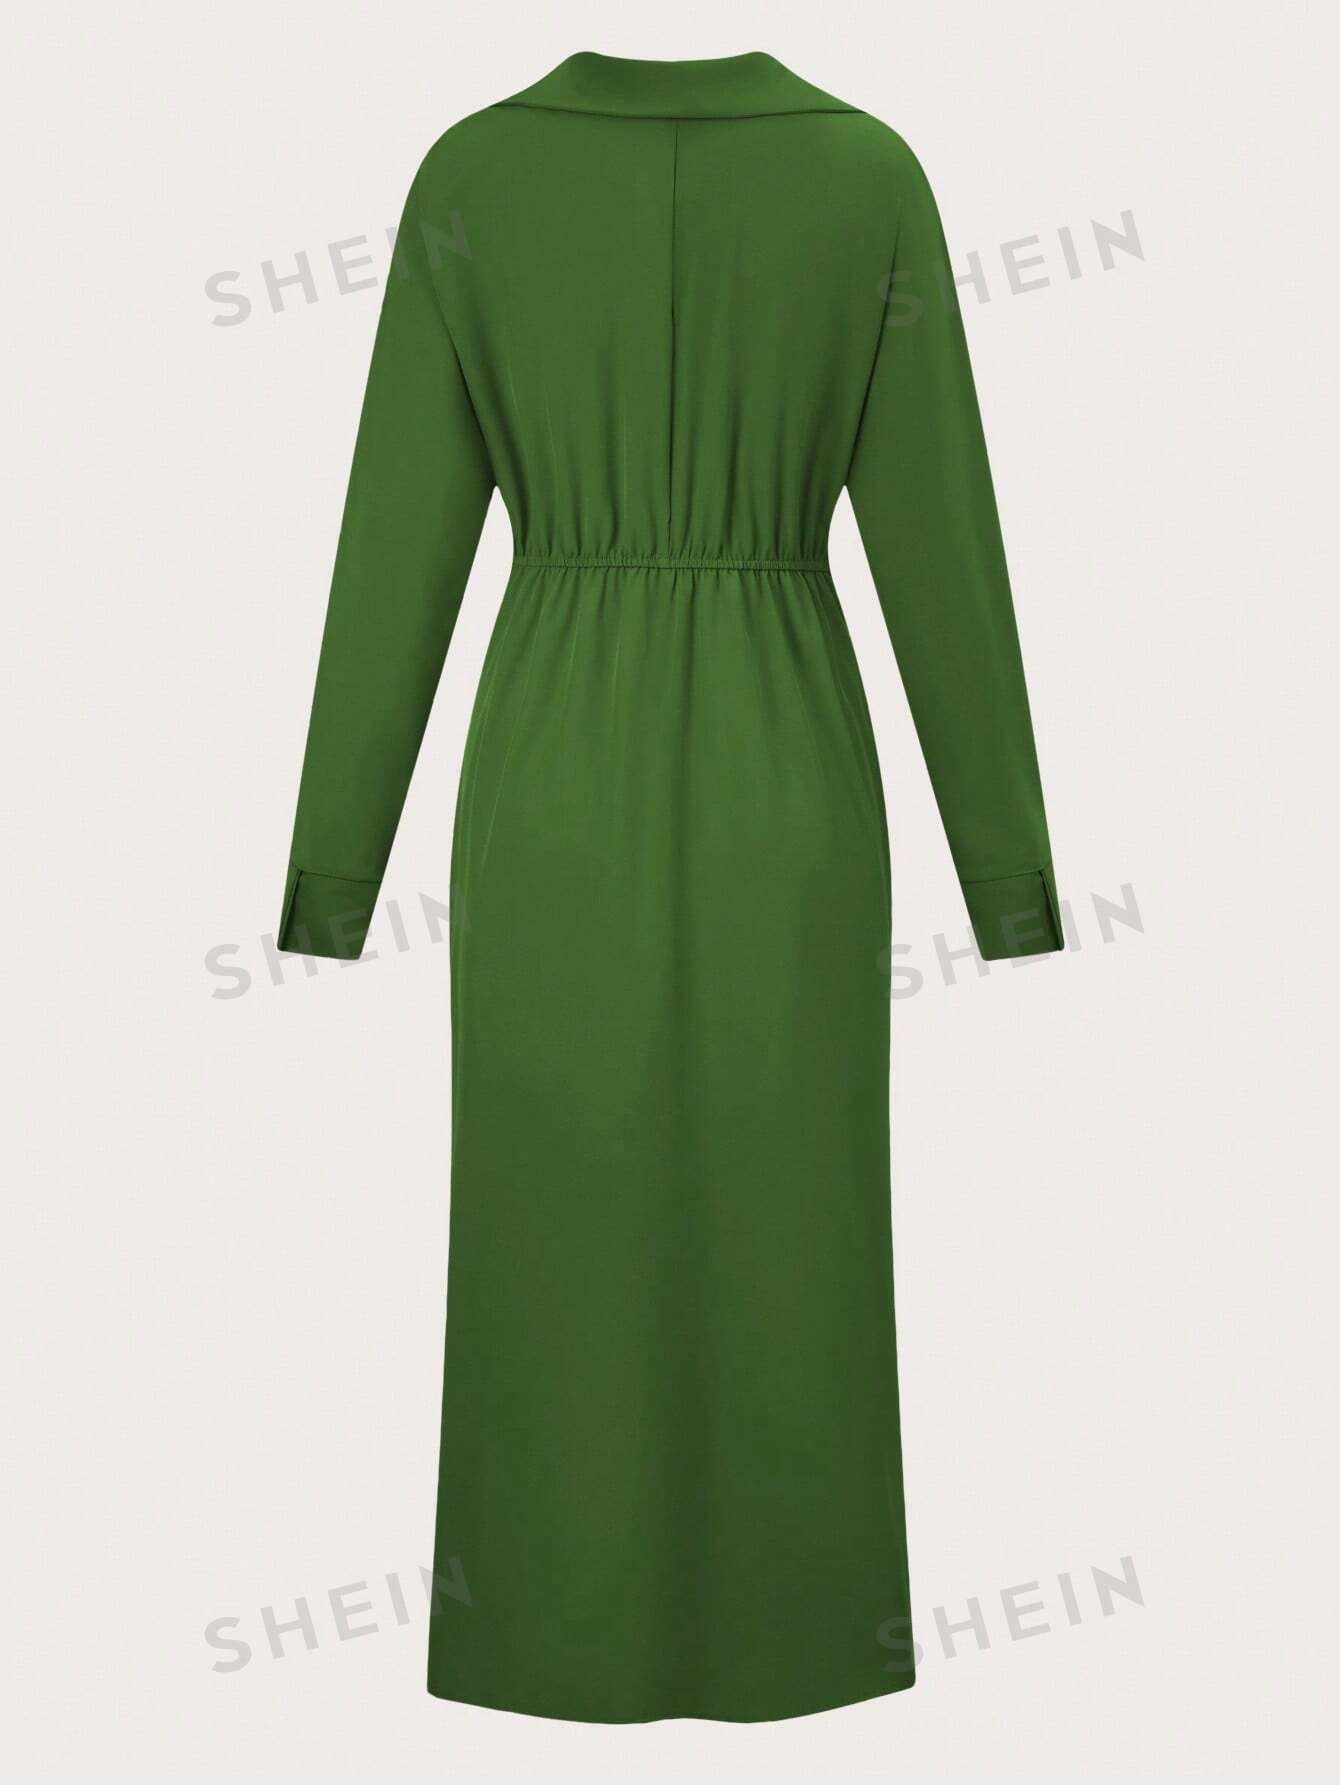 SHEIN Privé Однотонное платье макси с v-образным вырезом, армейский зеленый